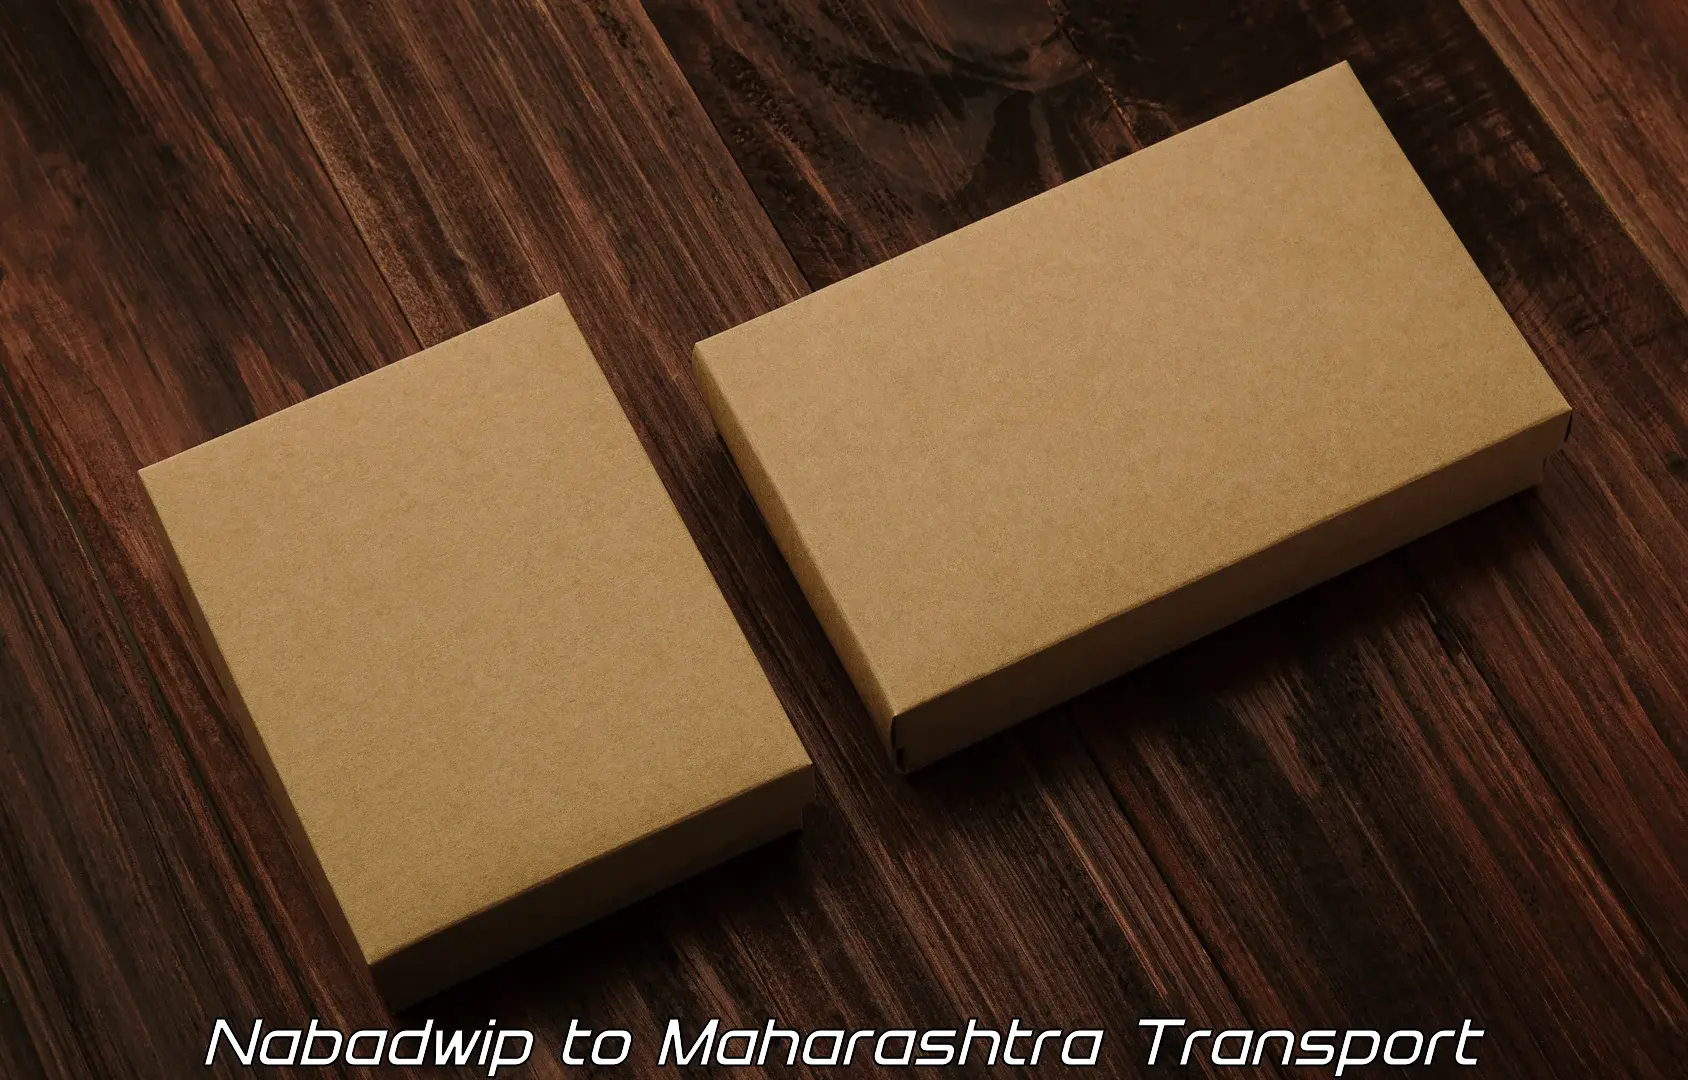 Furniture transport service Nabadwip to Lasalgaon